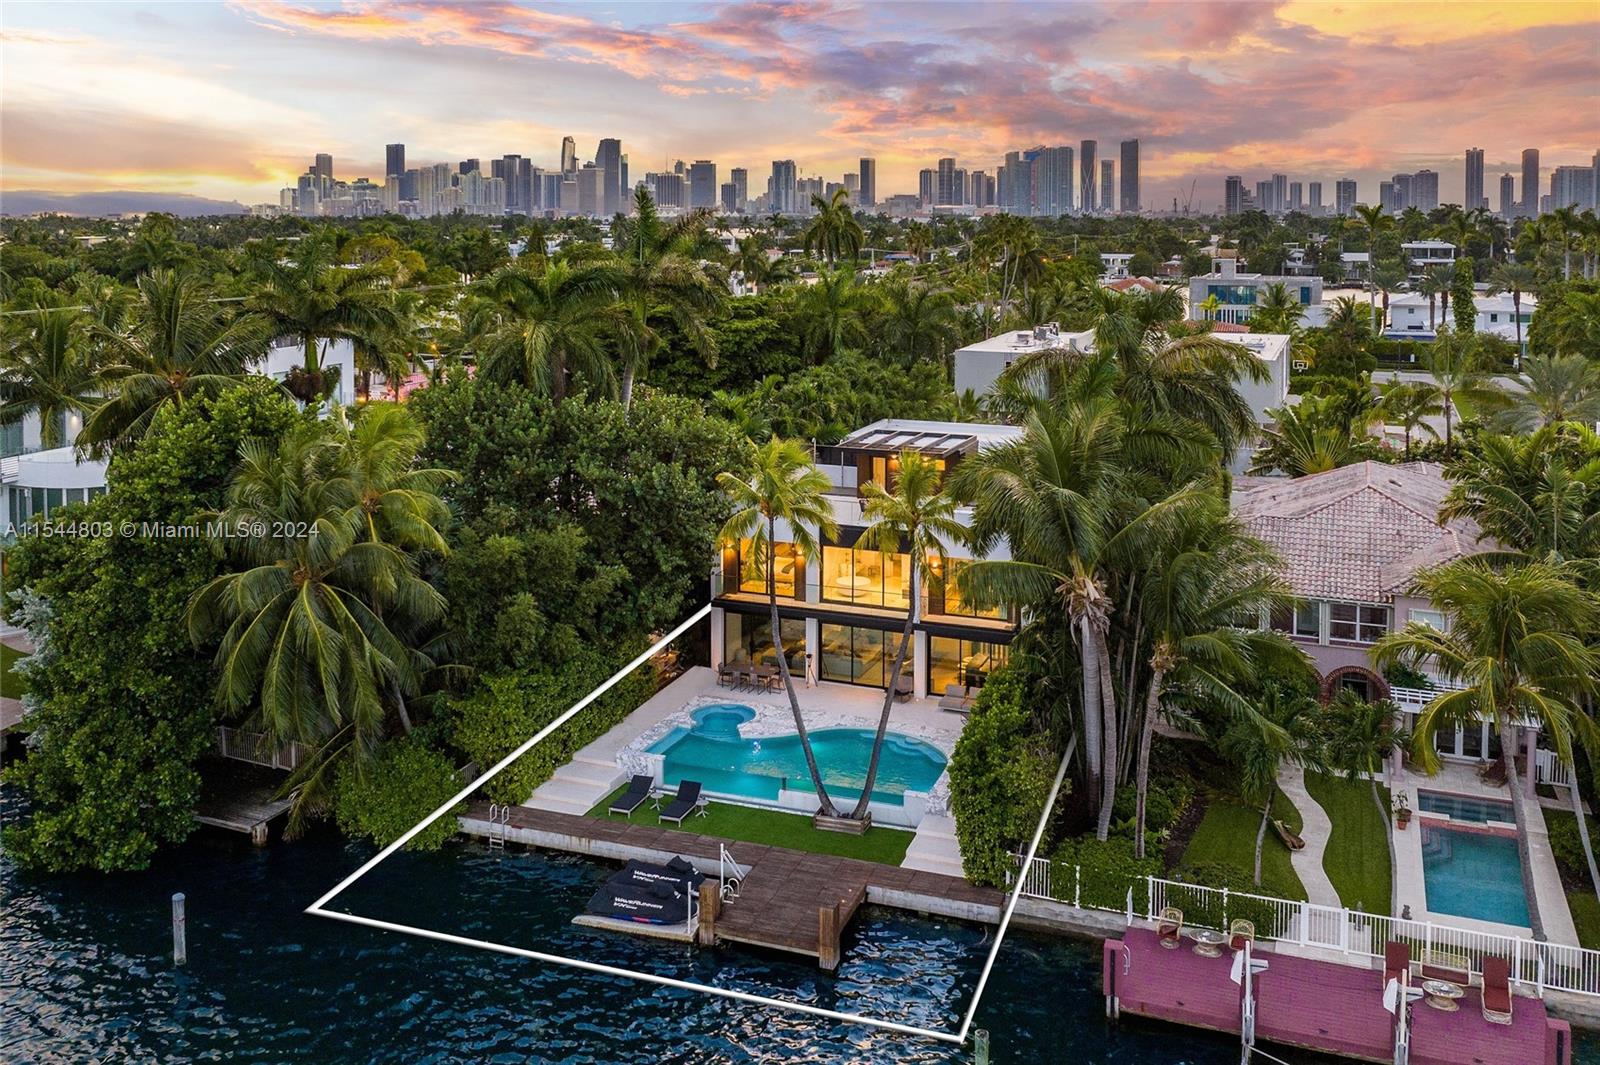 Property for Sale at 247 E Rivo Alto Dr, Miami Beach, Miami-Dade County, Florida - Bedrooms: 6 
Bathrooms: 7  - $16,250,000